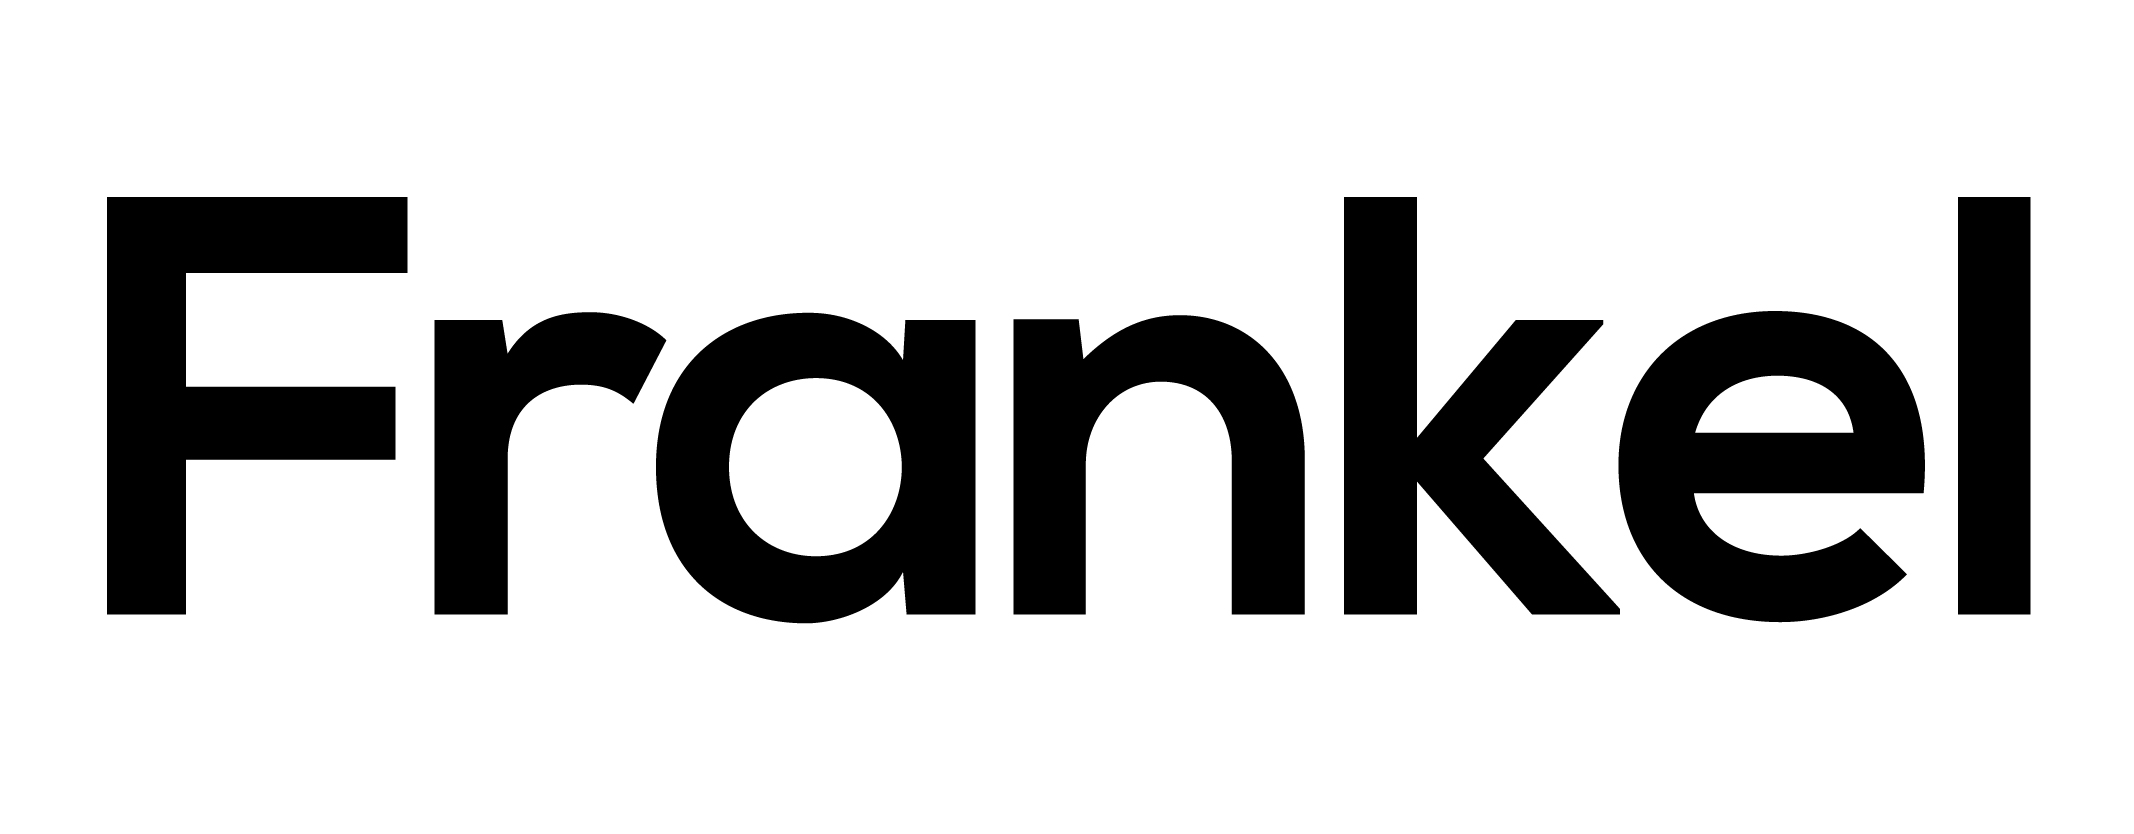 株式会社Frankel